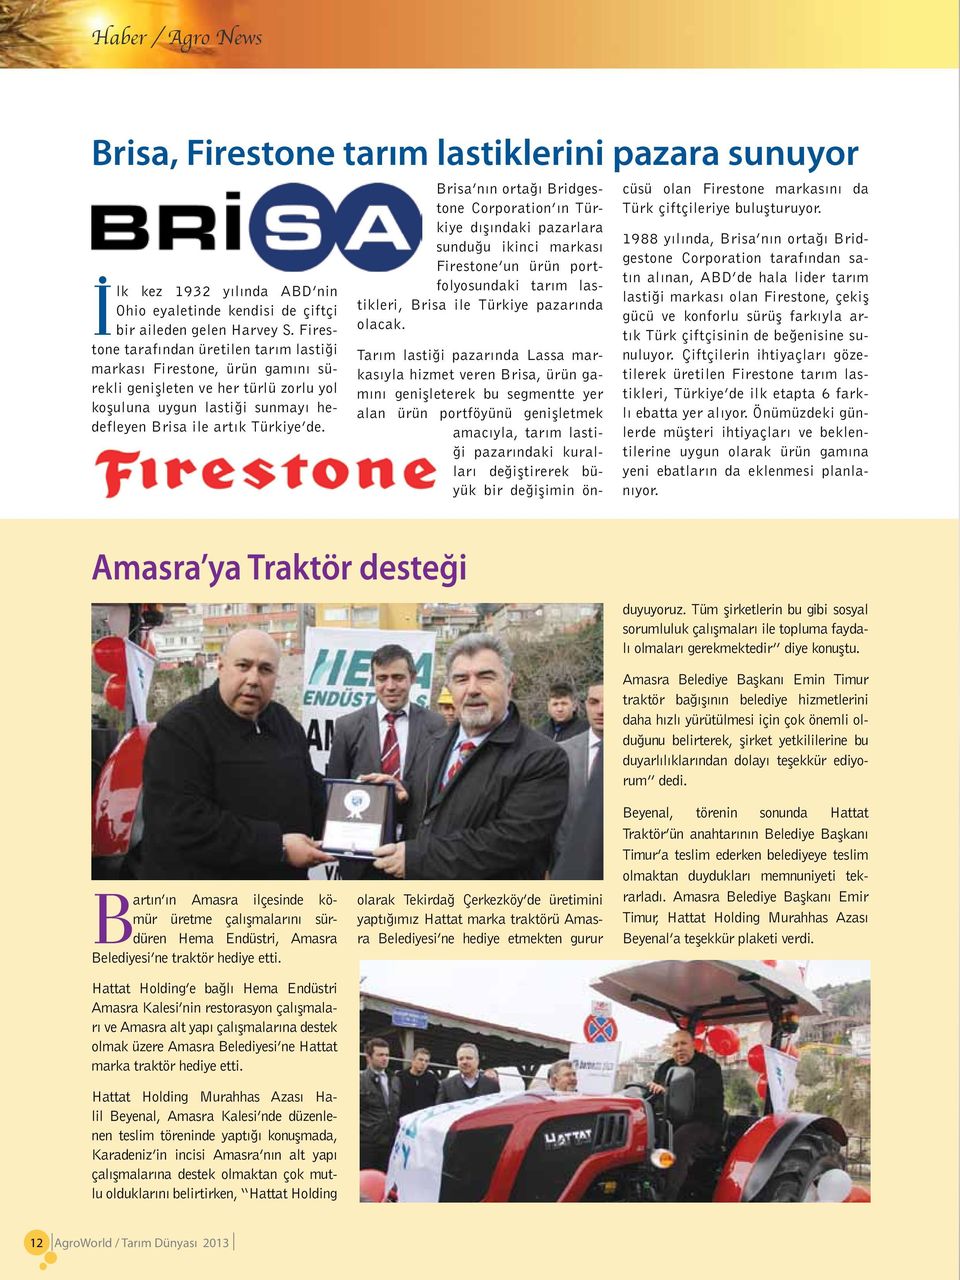 Brisa nın ortağı Bridgestone Corporation ın Türkiye dışındaki pazarlara sunduğu ikinci markası Firestone un ürün portfolyosundaki tarım lastikleri, Brisa ile Türkiye pazarında olacak.